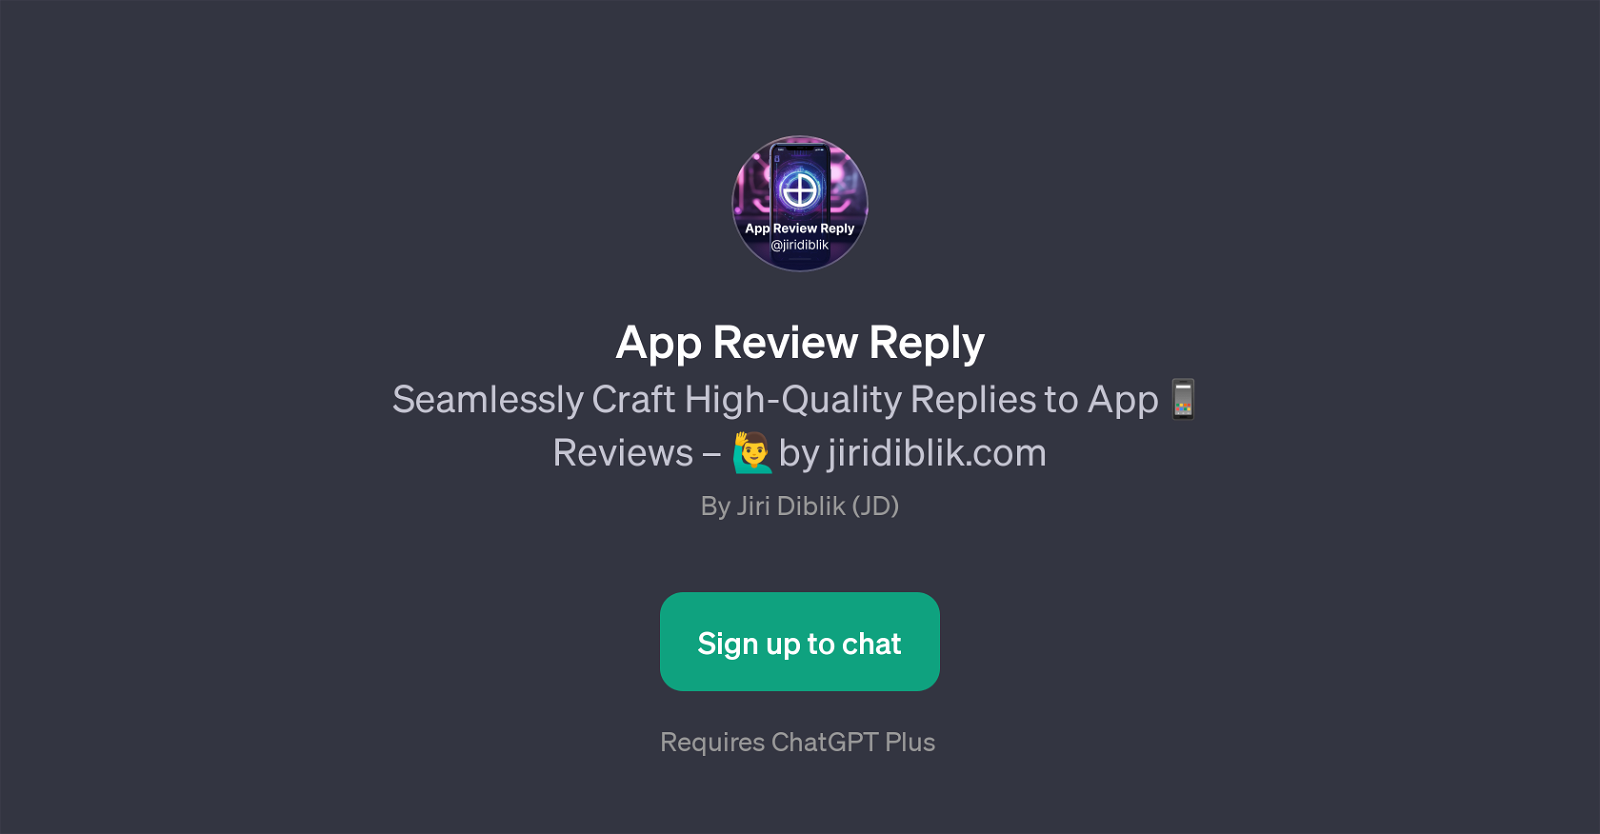 App Review Reply website